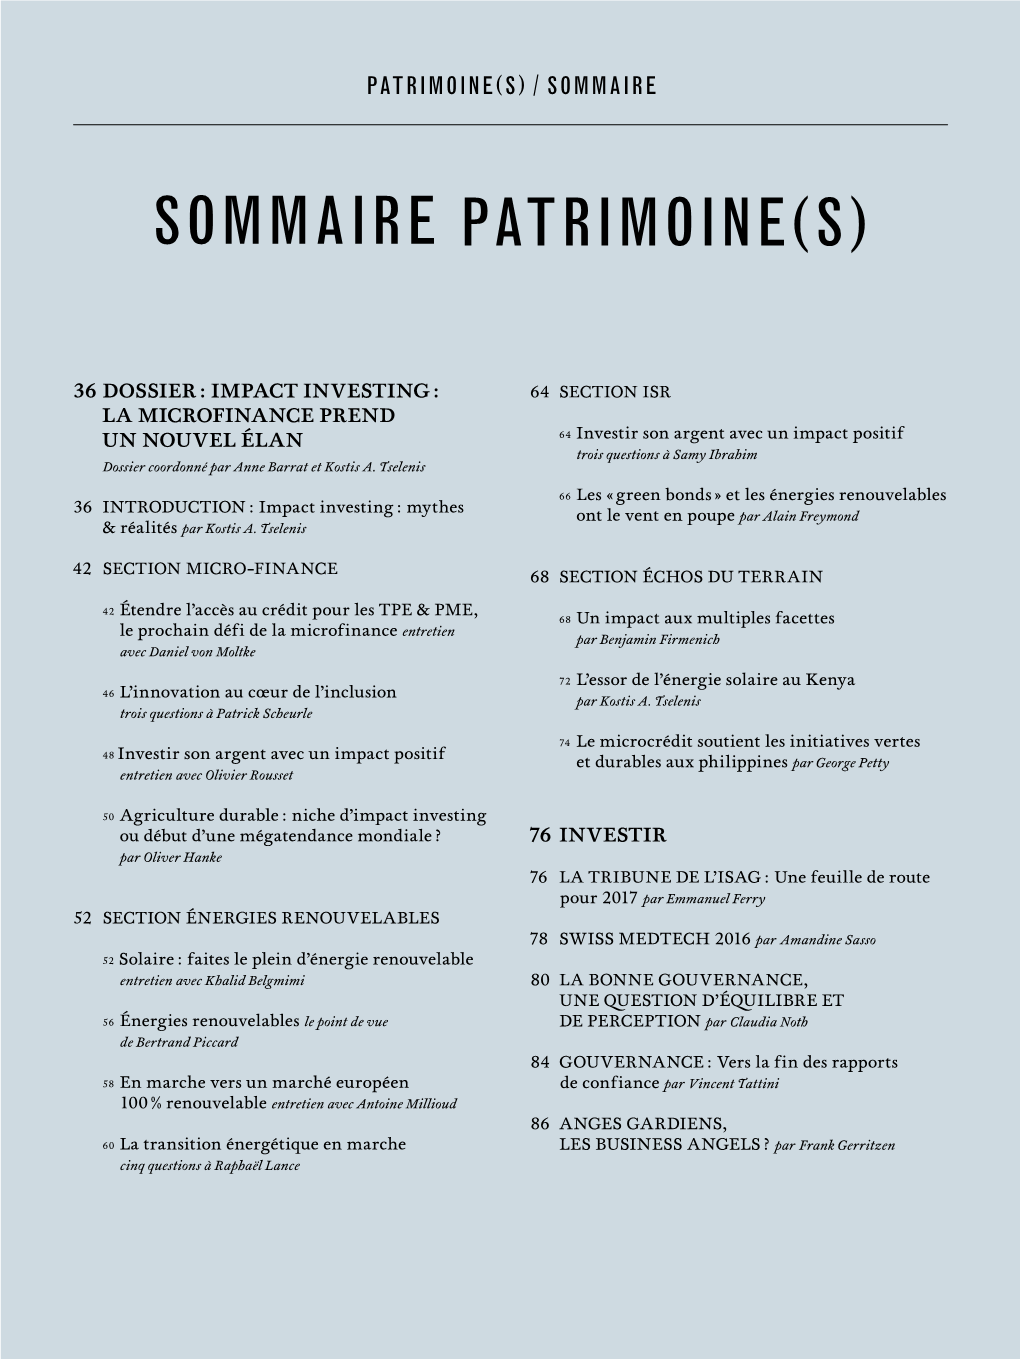 Sommaire Patrimoine(S)